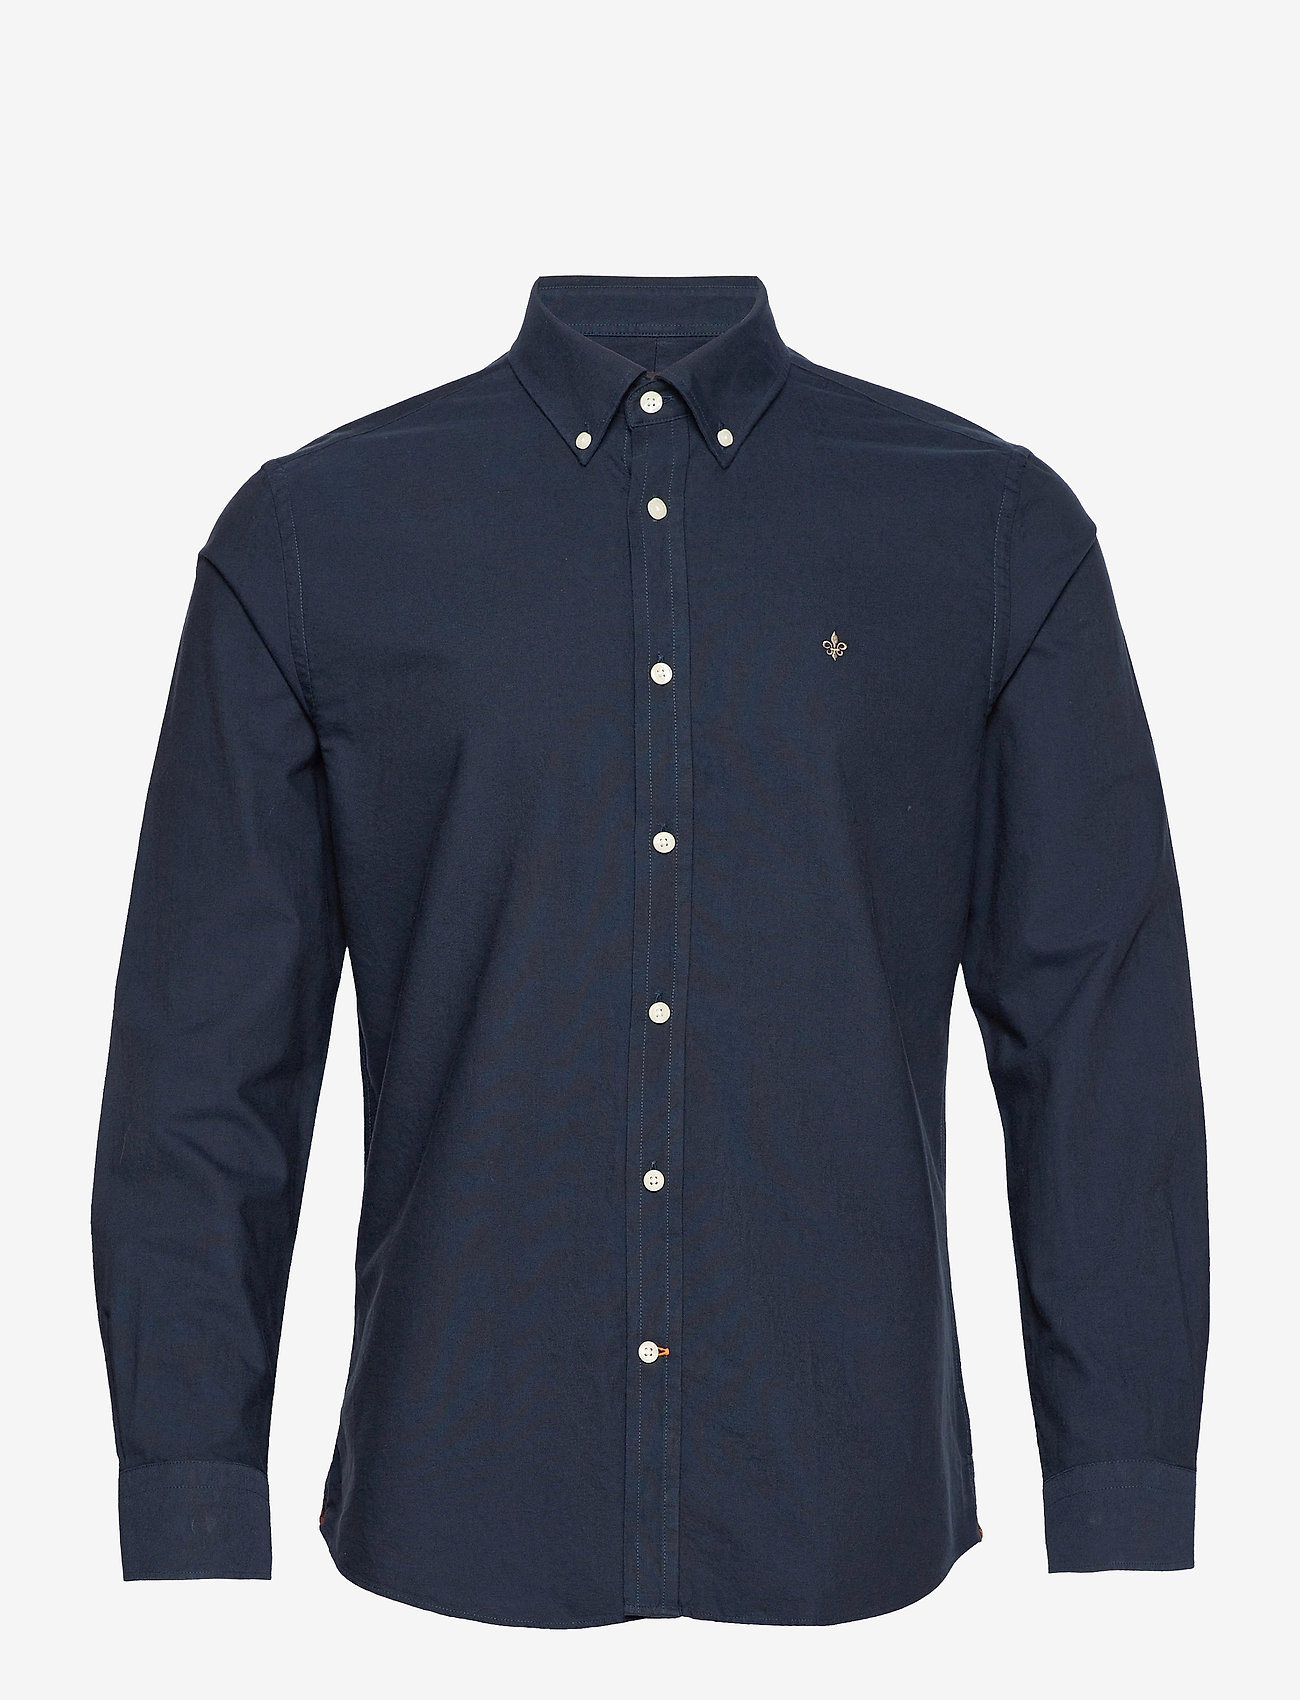 Morris - Oxford Button Down Shirt - basic overhemden - navy - 0